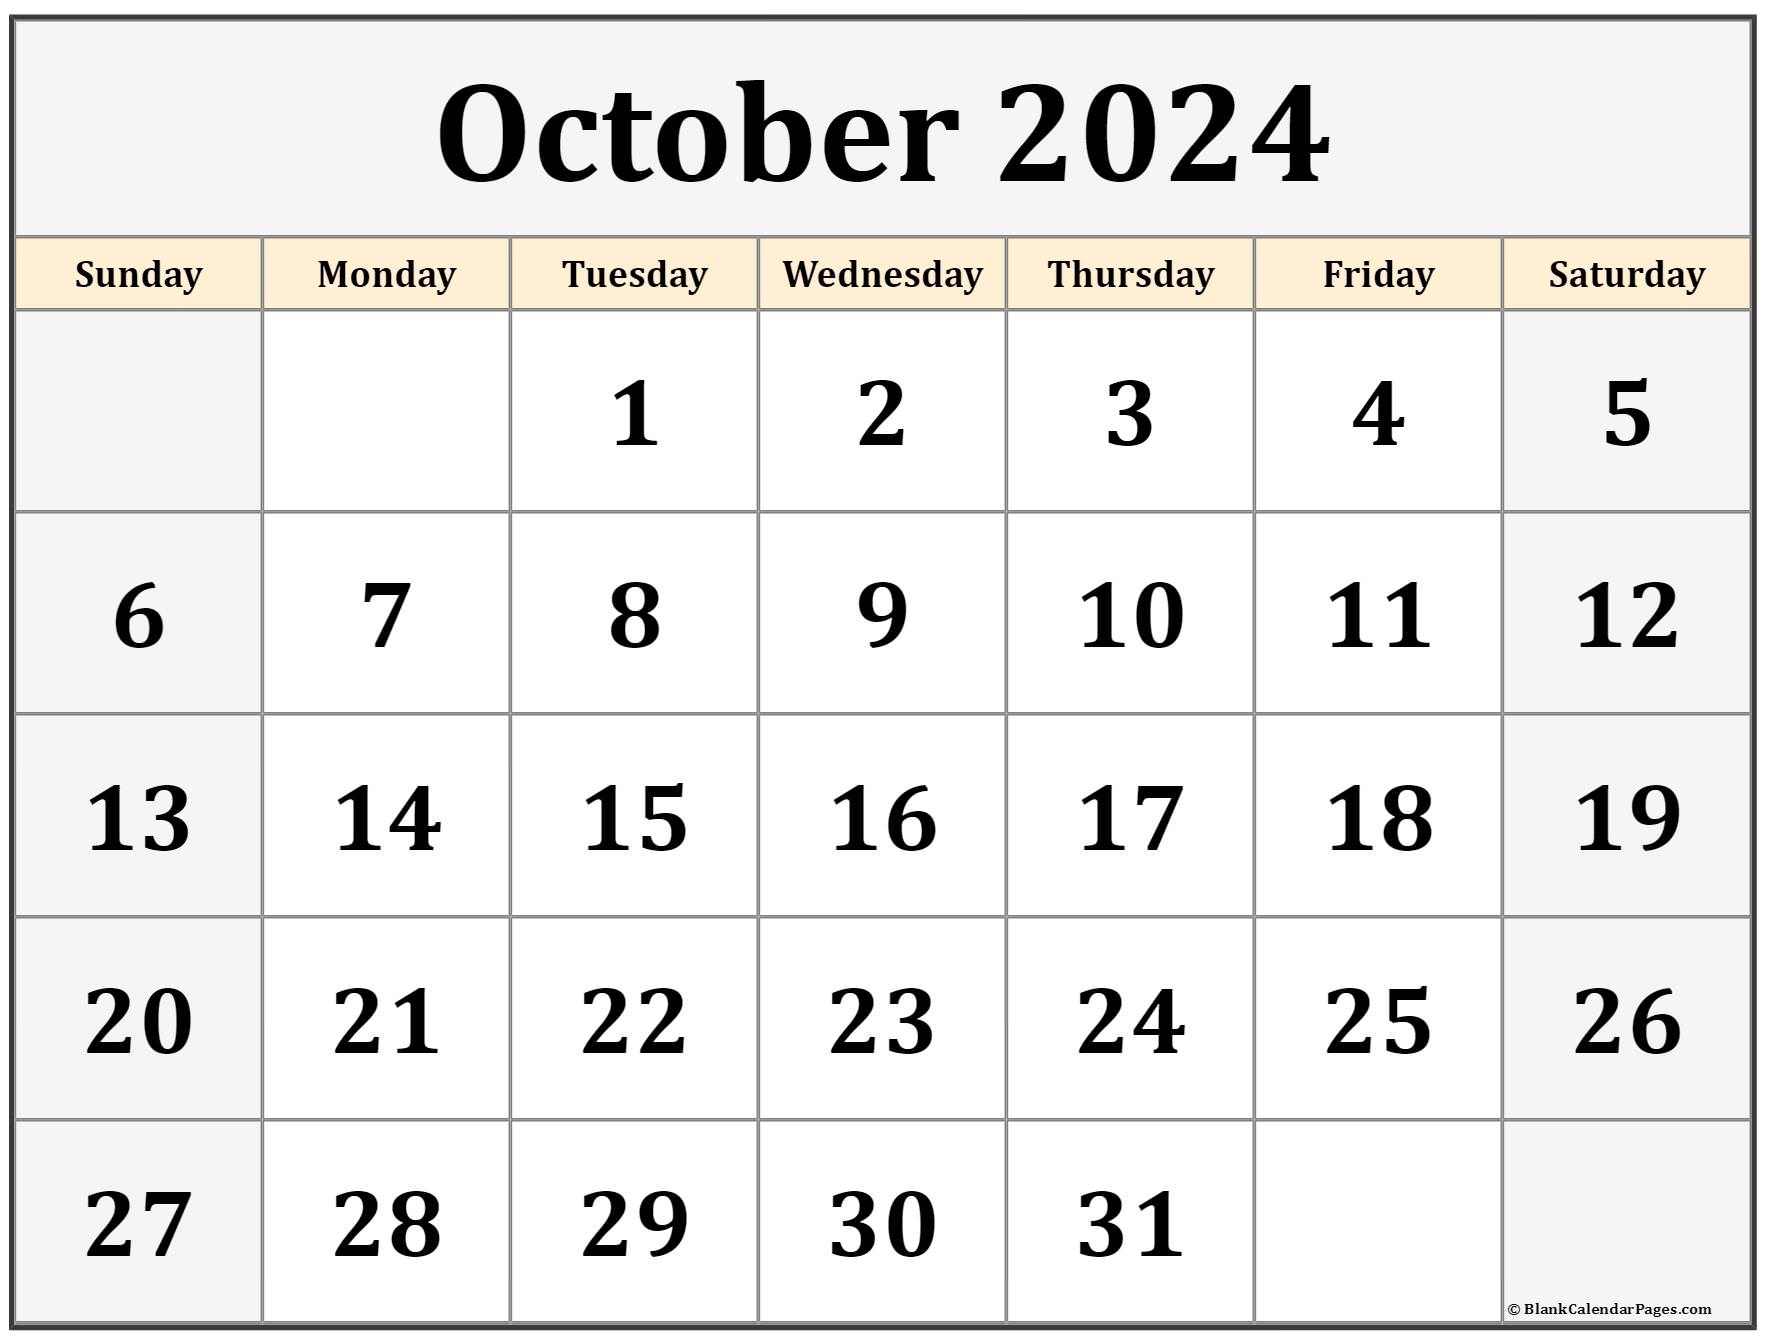 October 2024 calendar free printable calendar